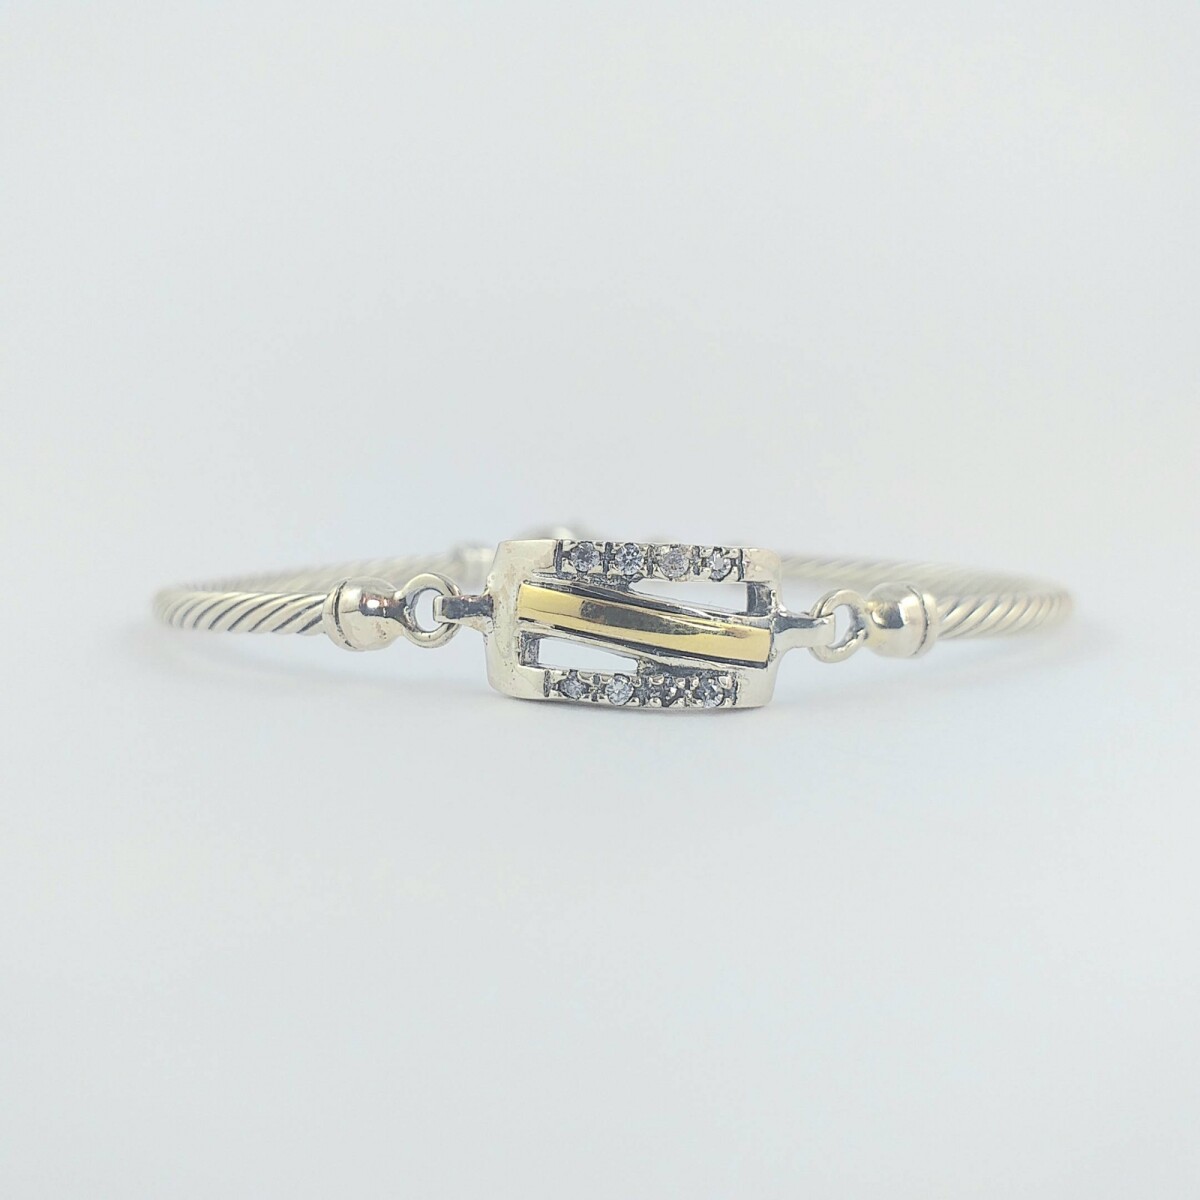 Pulsera de plata 925, alambre semirígido torzado, con aplique doublé de oro 18ktes 1.6cm*9mm y circonias, cierre mosquetón. 